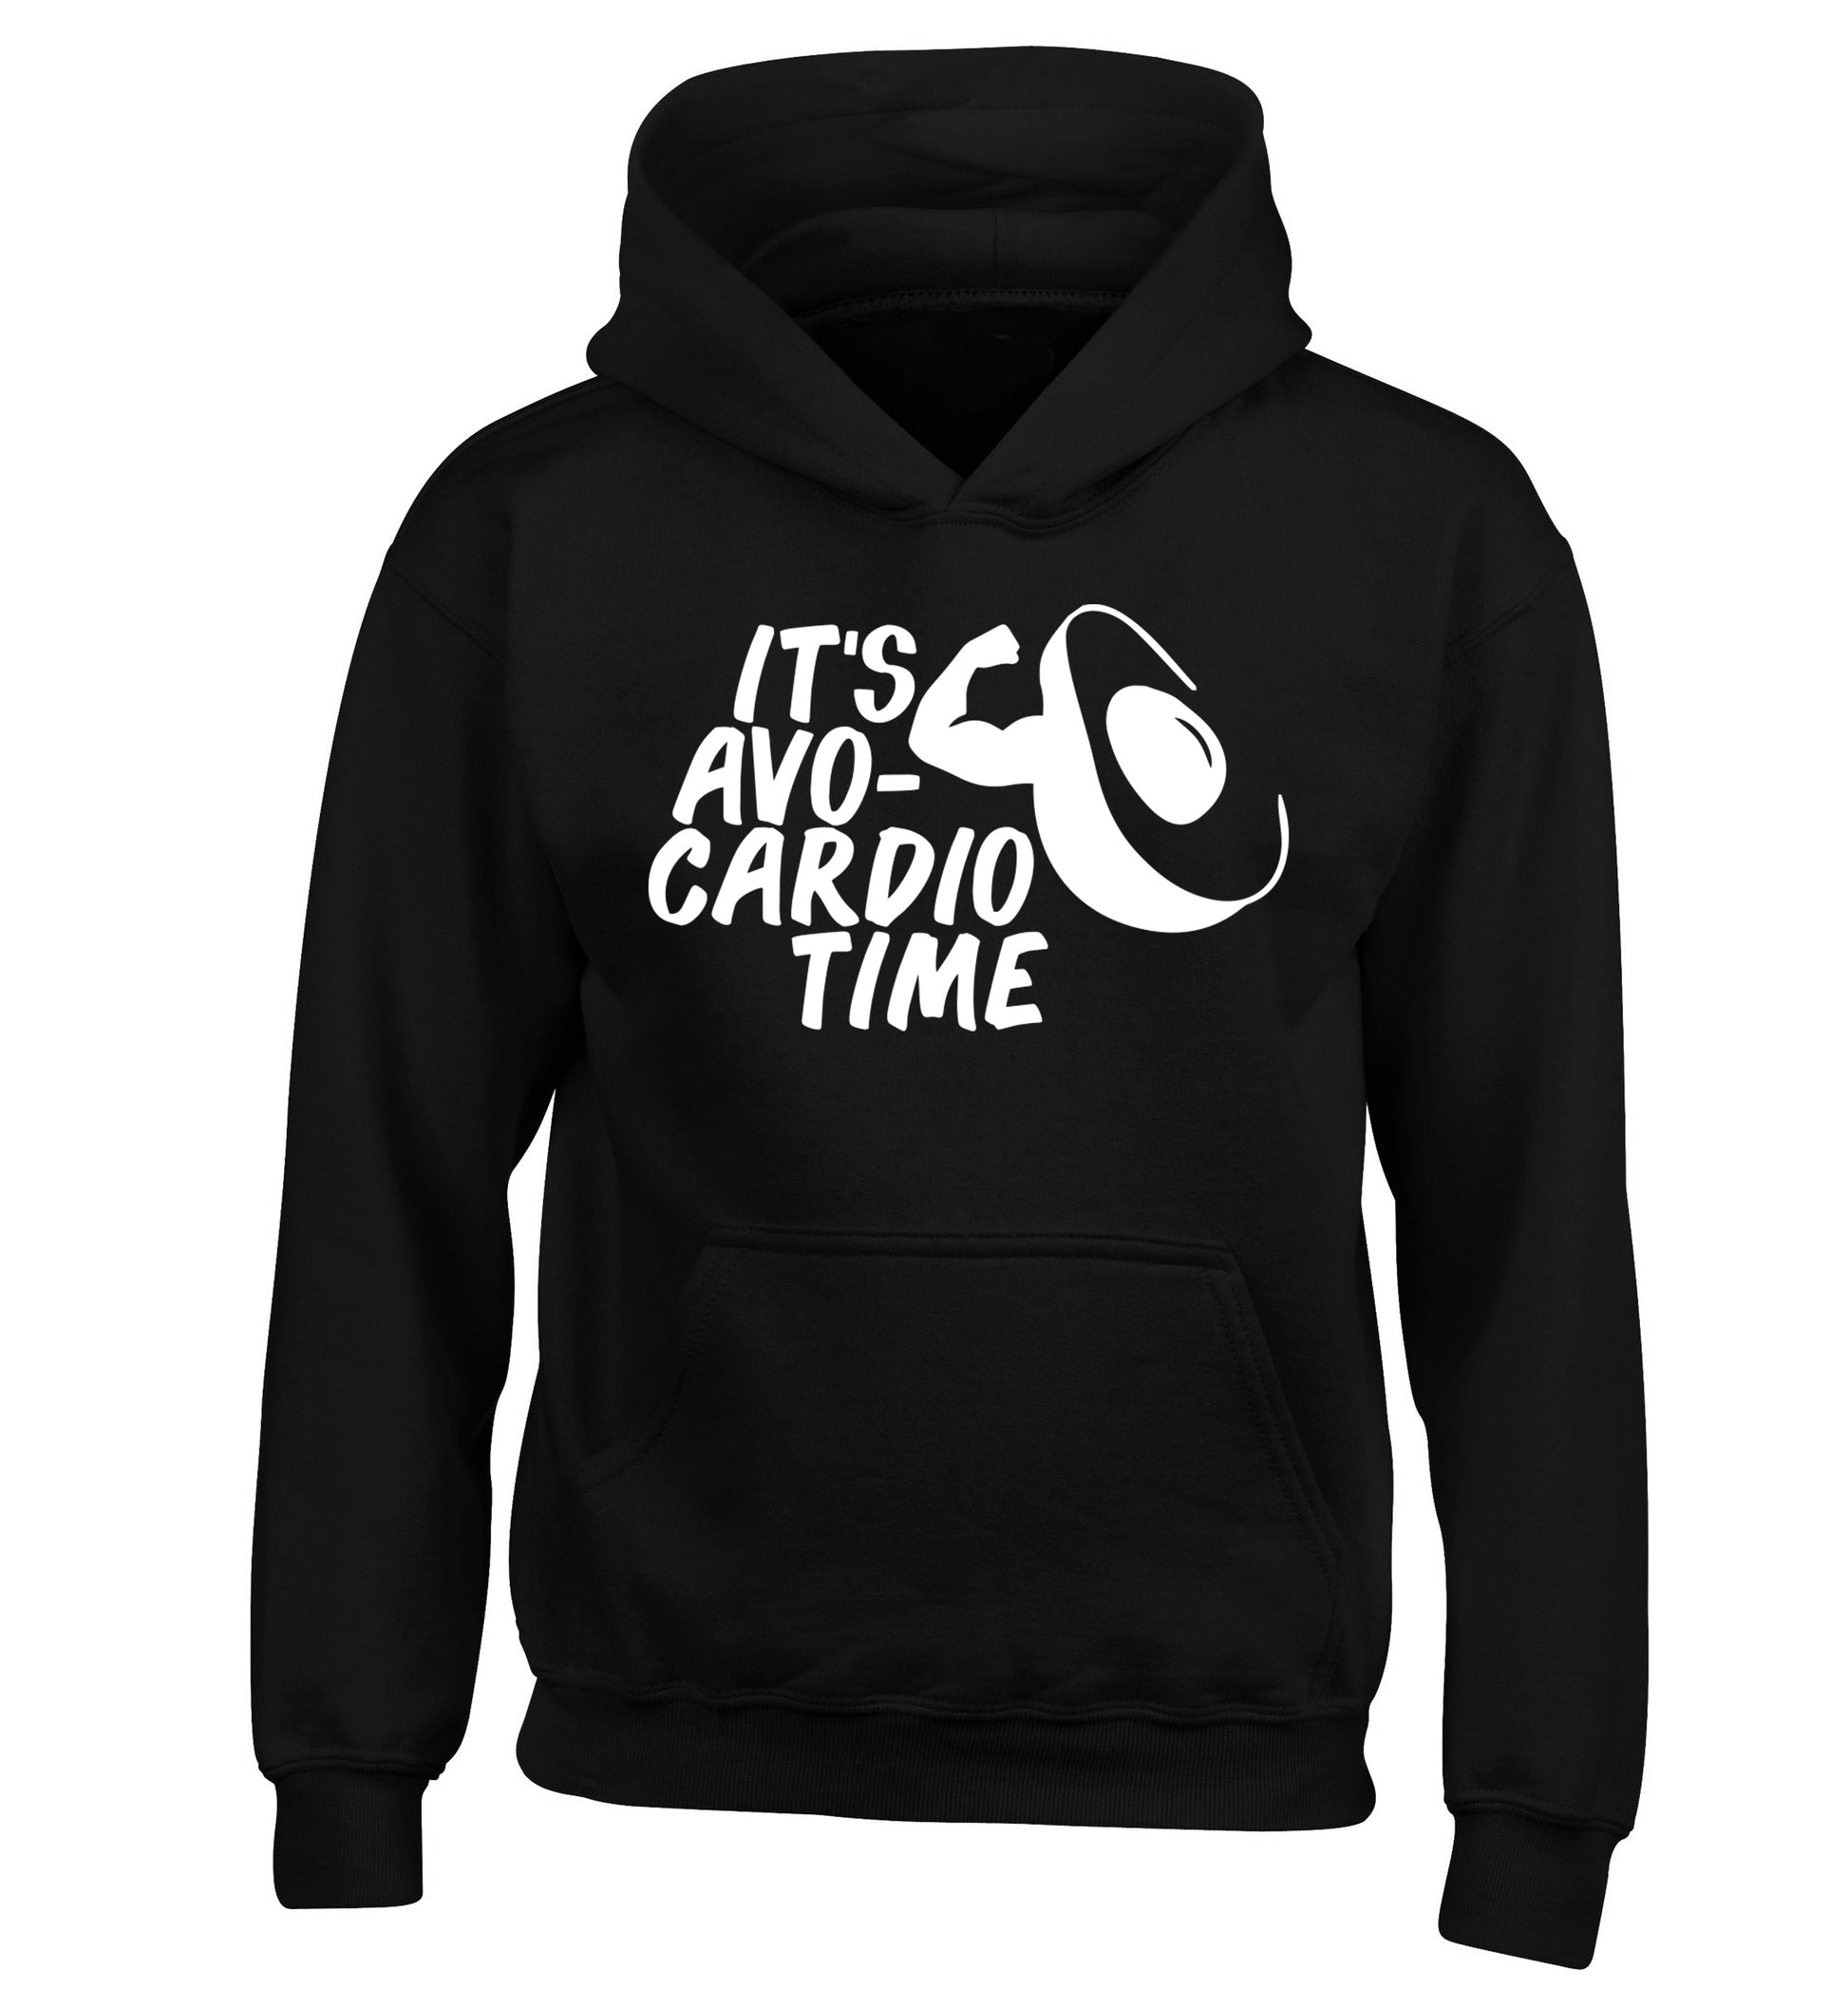 It's avo-cardio time children's black hoodie 12-14 Years